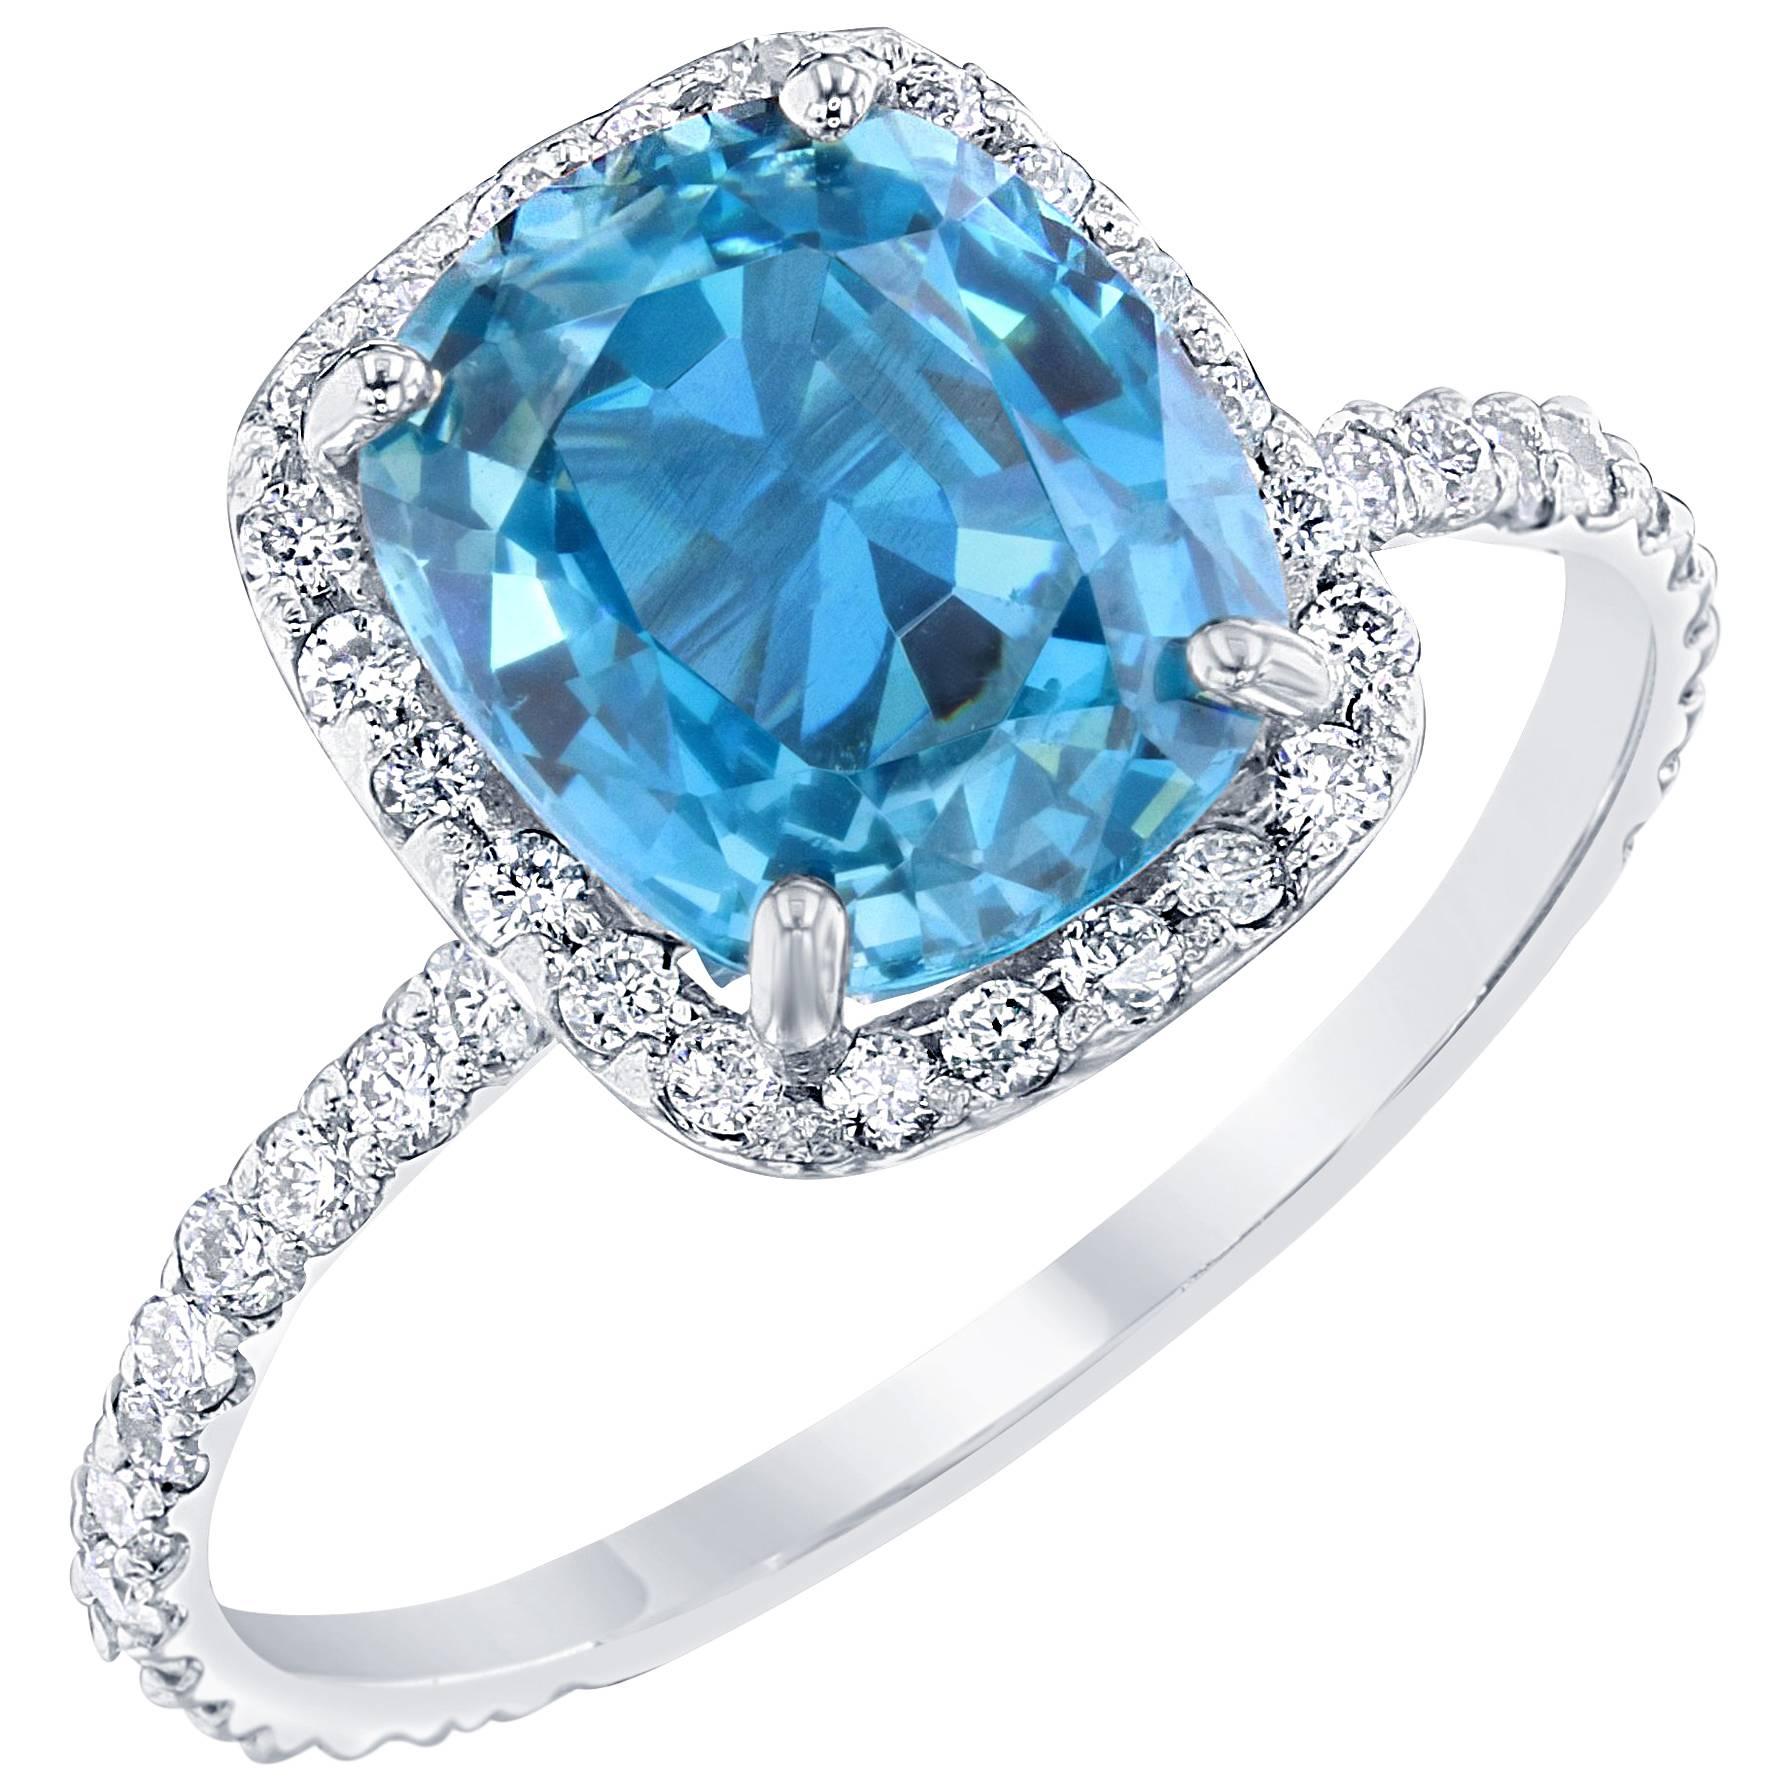 4.27 Carat Blue Zircon Diamond 18 Karat White Gold Engagement Ring